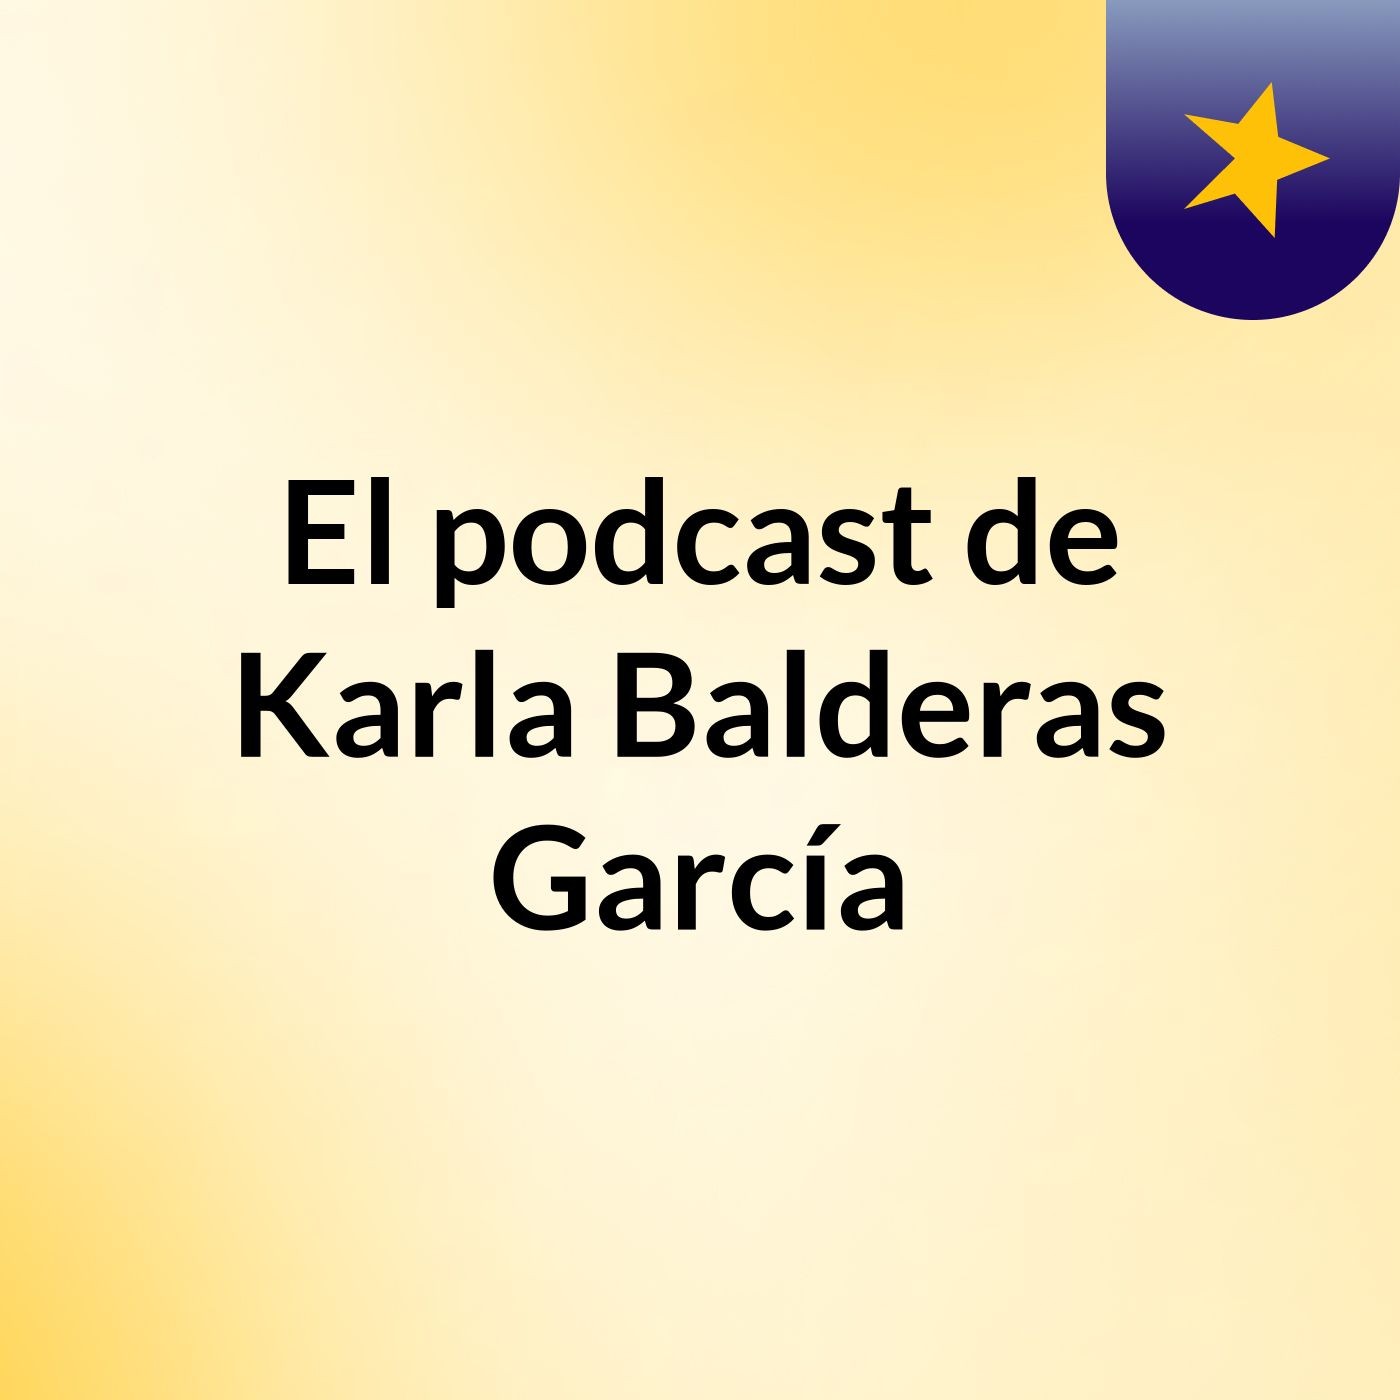 El podcast de Karla Balderas García